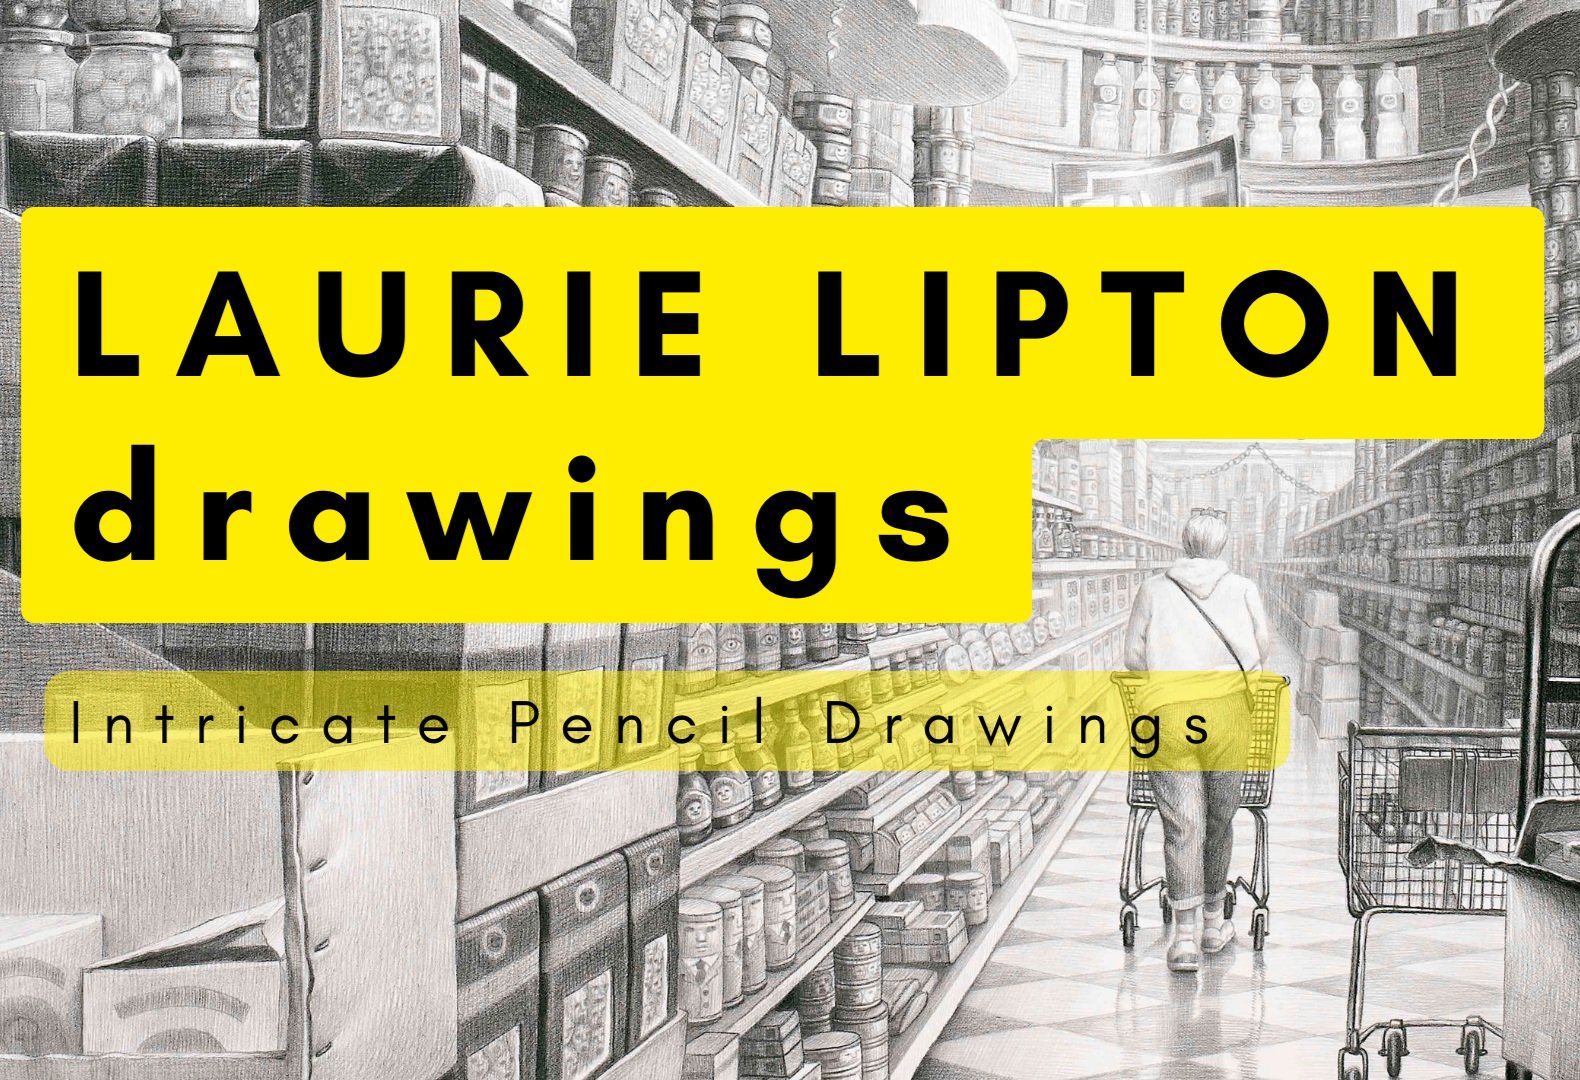 LAURIE LIPTON drawings